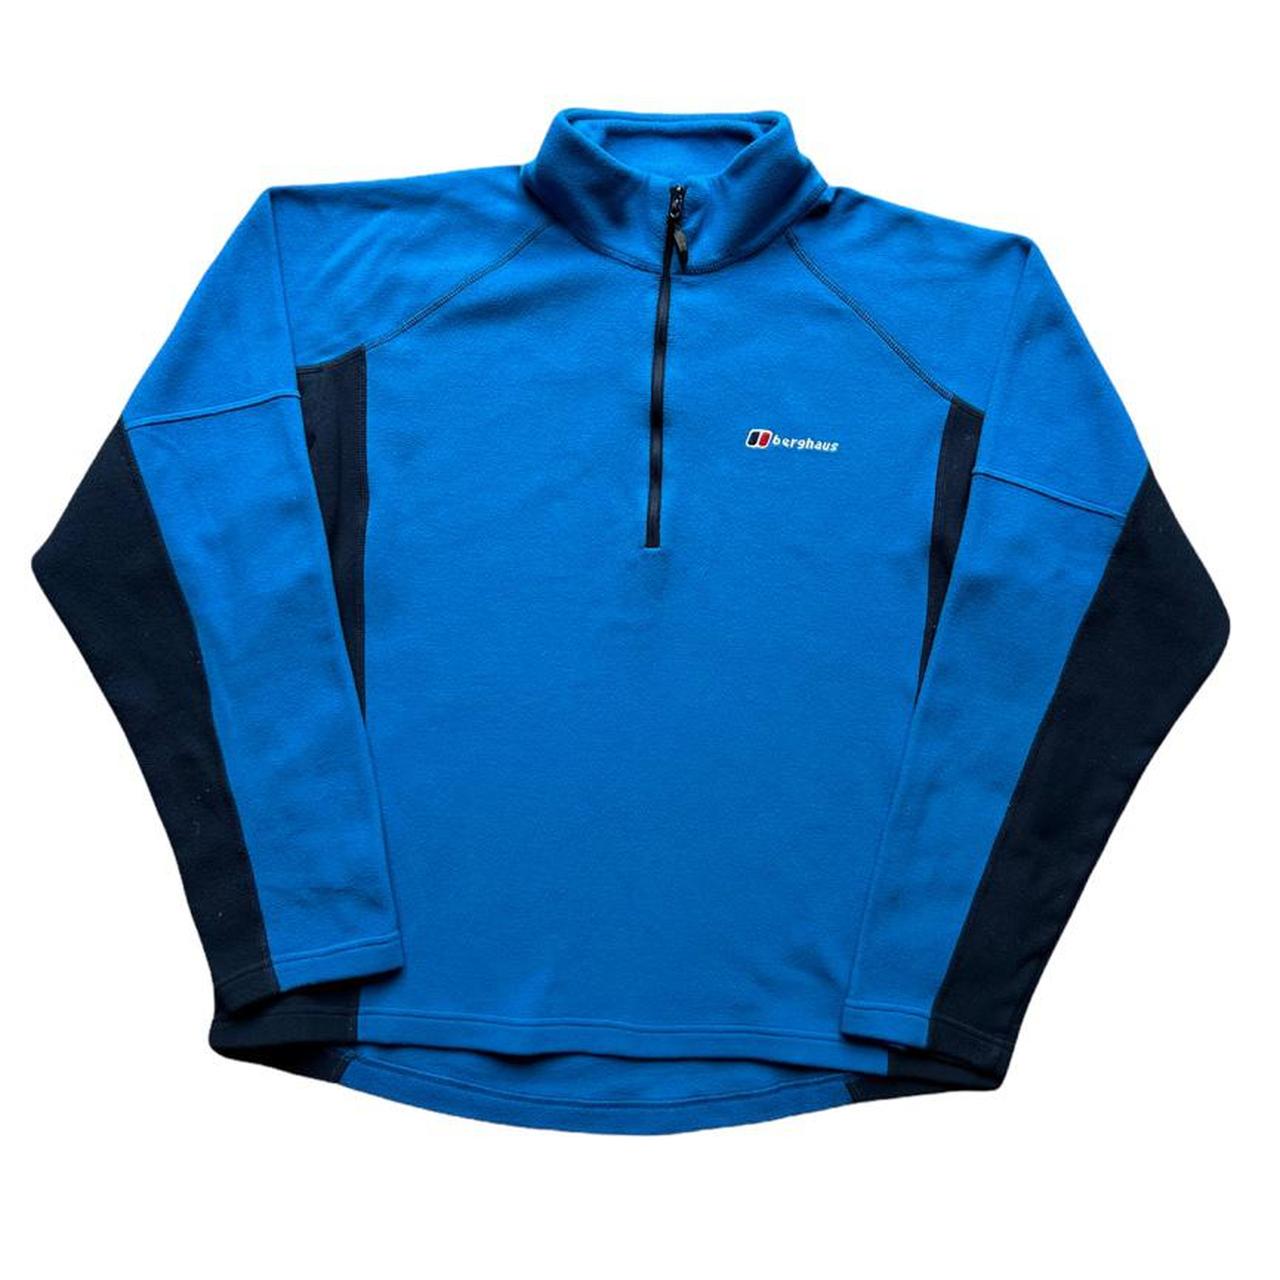 Berghaus Blue 1/4 Zip Pullover Fleece Jumper Jacket.... - Depop